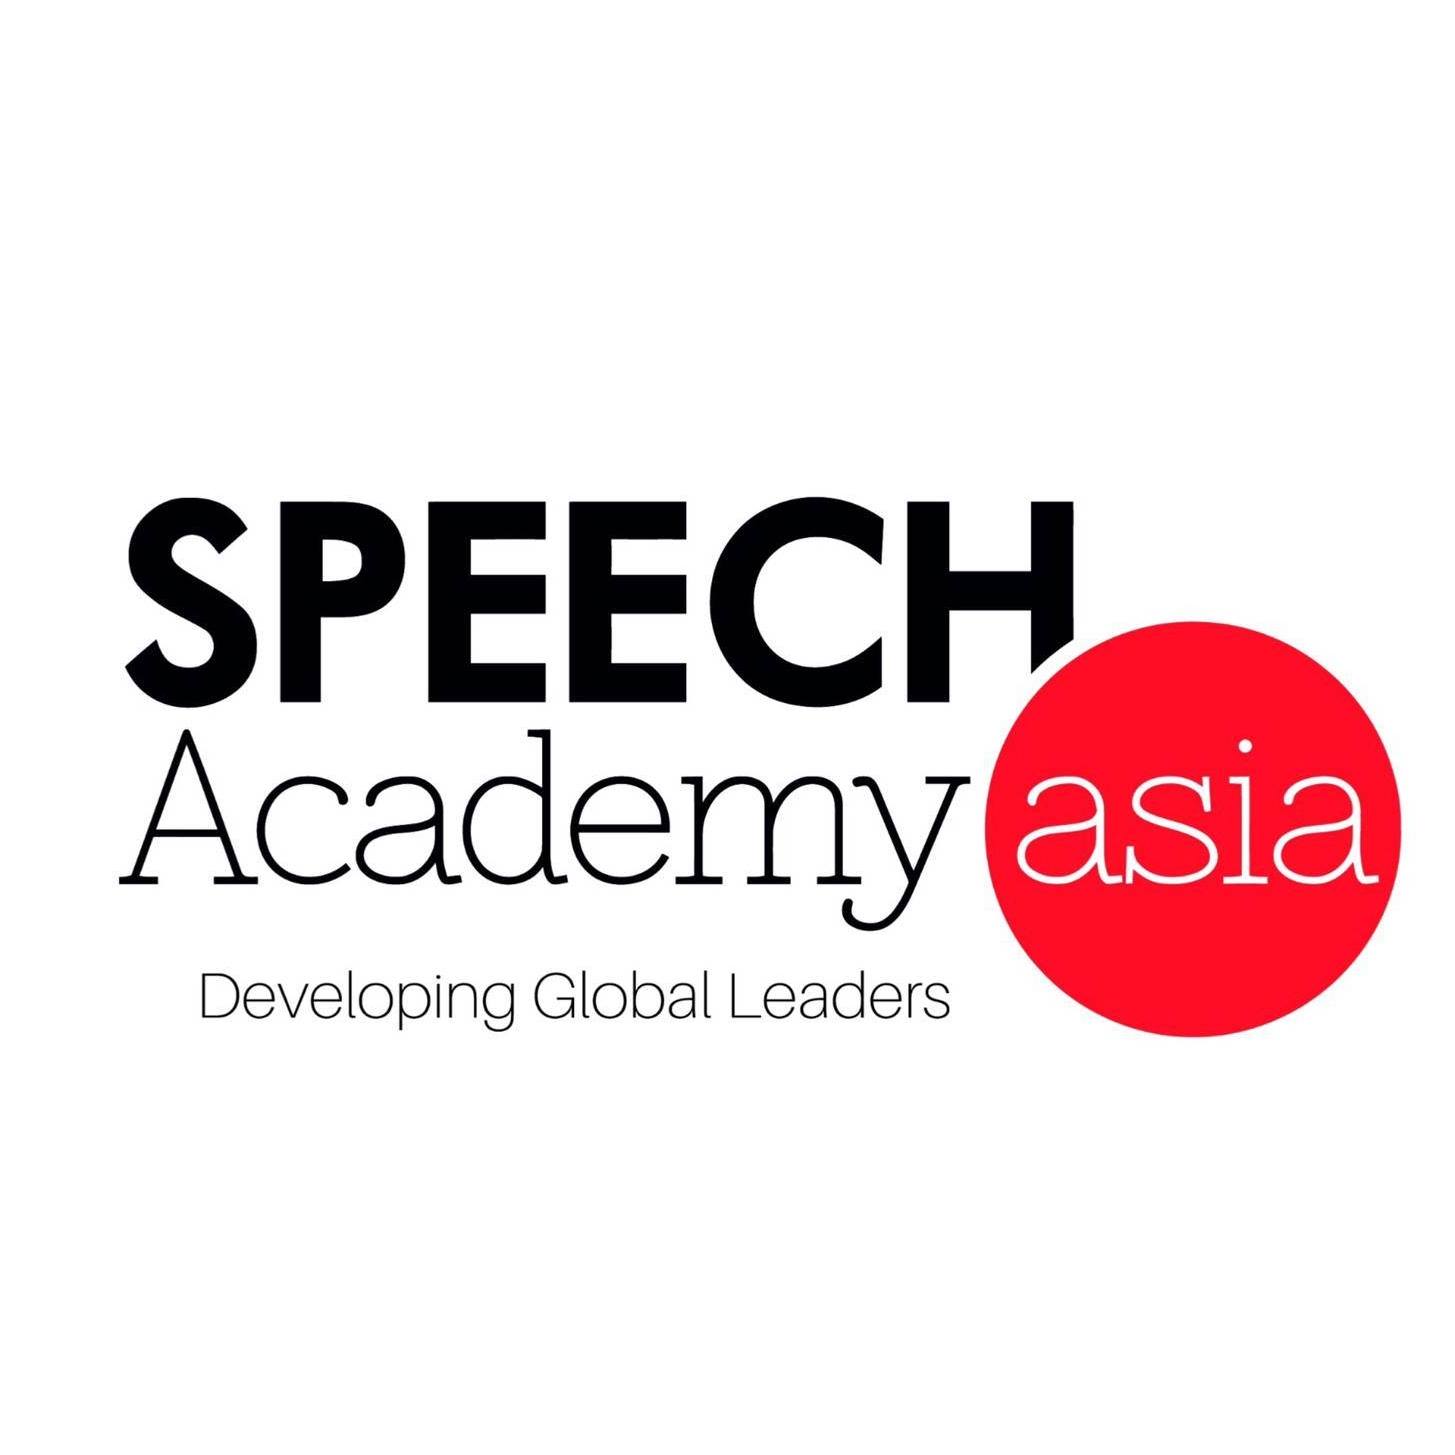 Speech Academy Asia